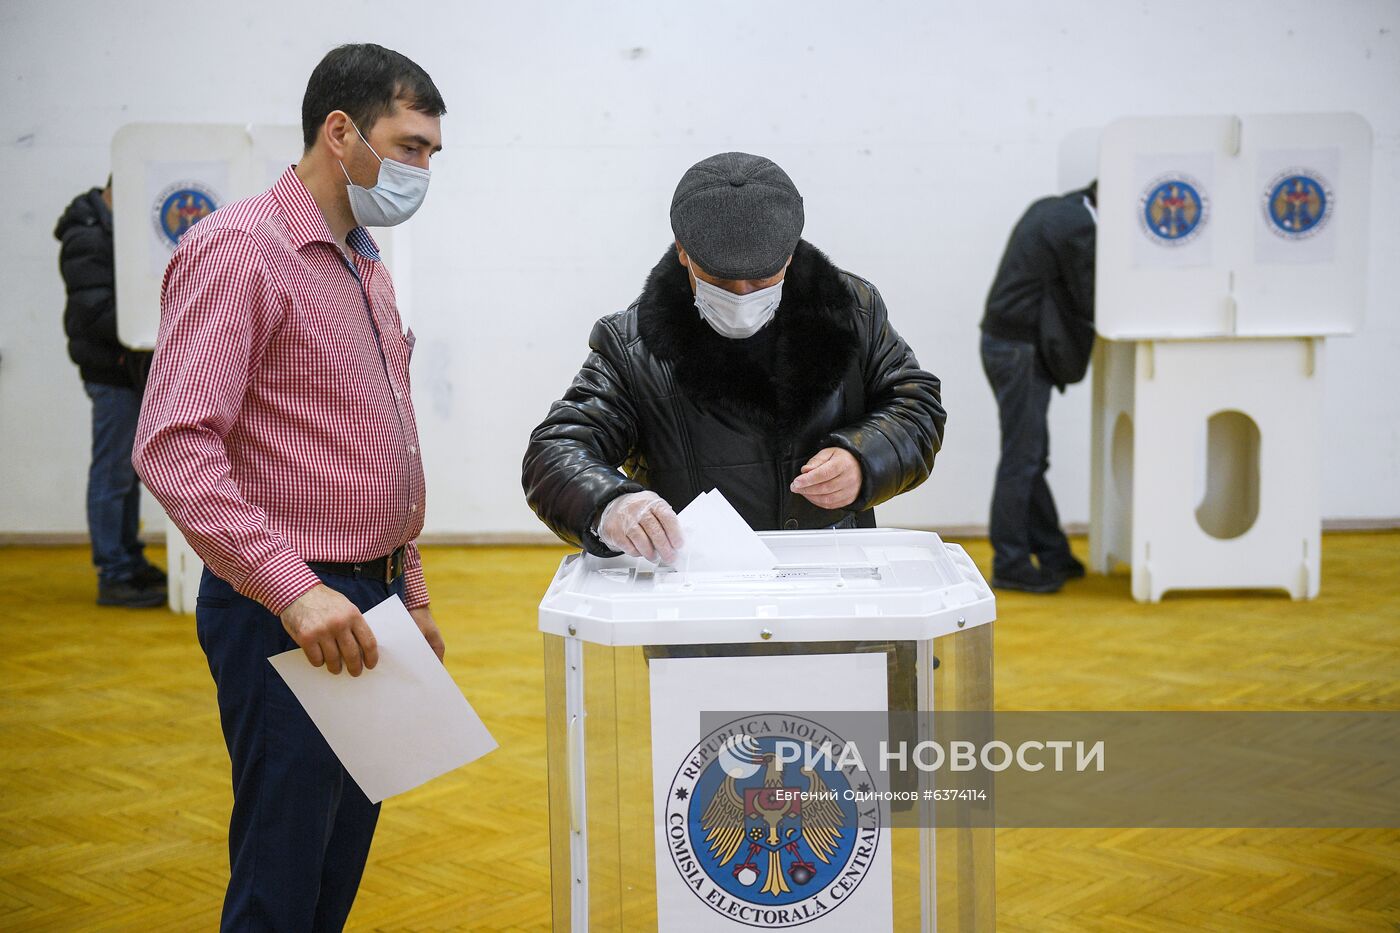 Голосование на выборах президента Молдавии в Москве